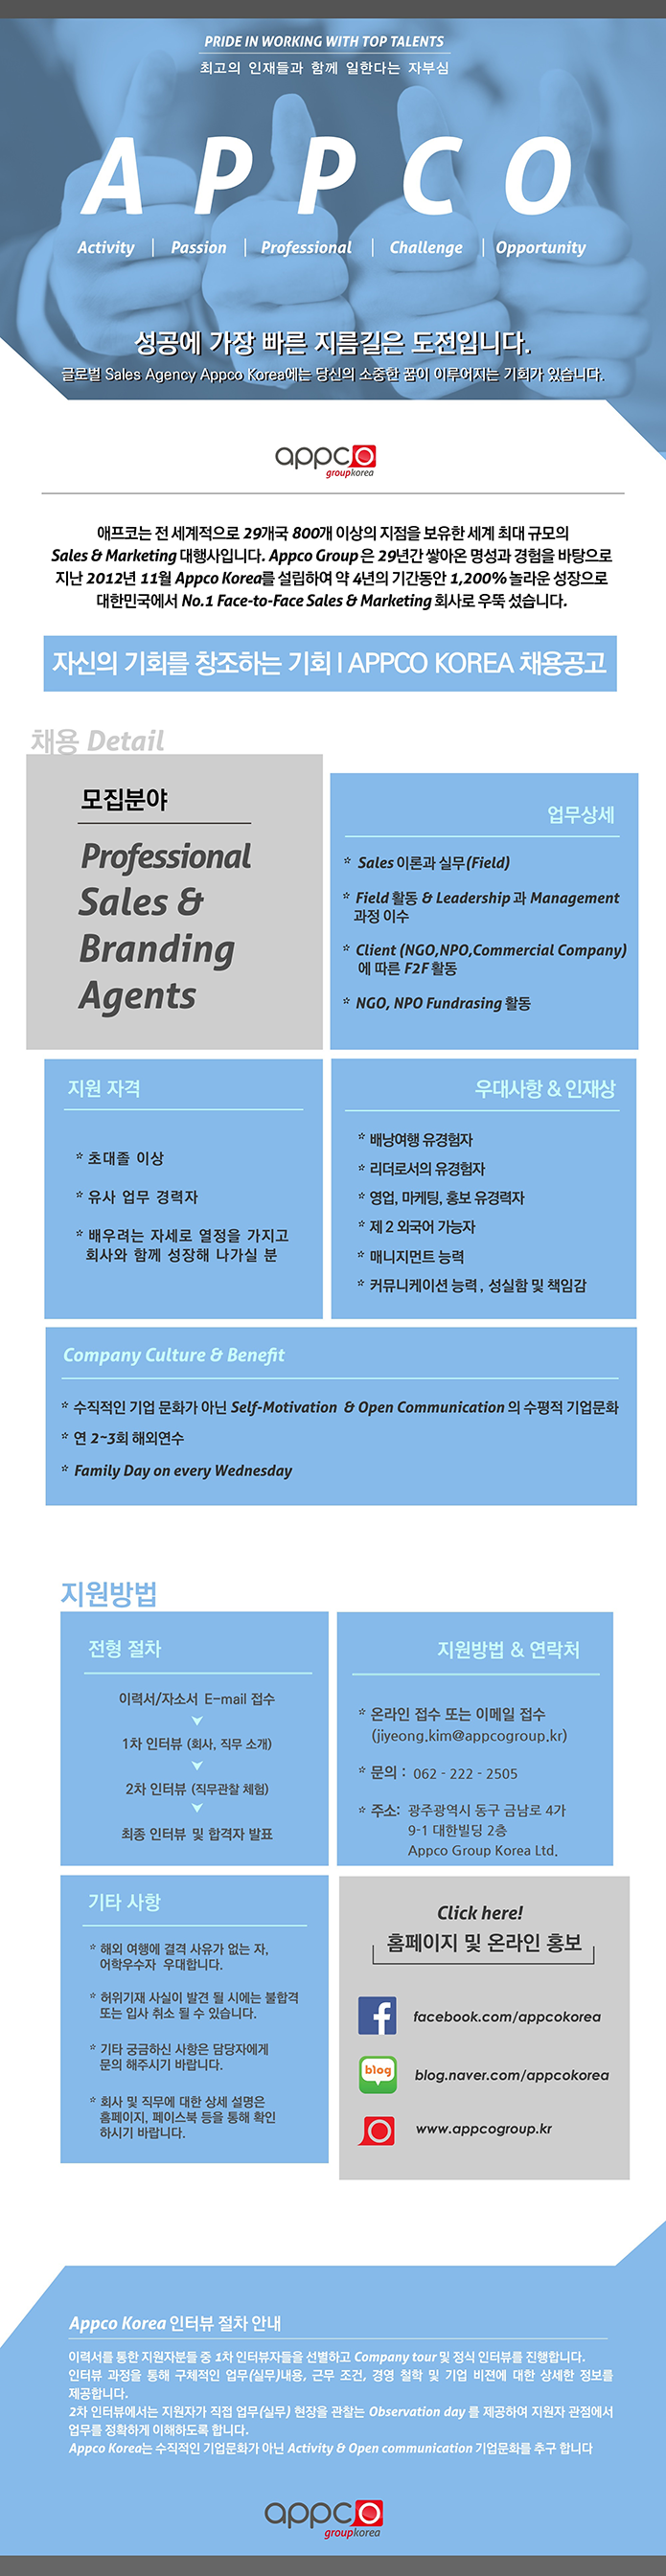 [외국계/광주지점] APPCO KOREA Professional Sales & Branding Agents 모집